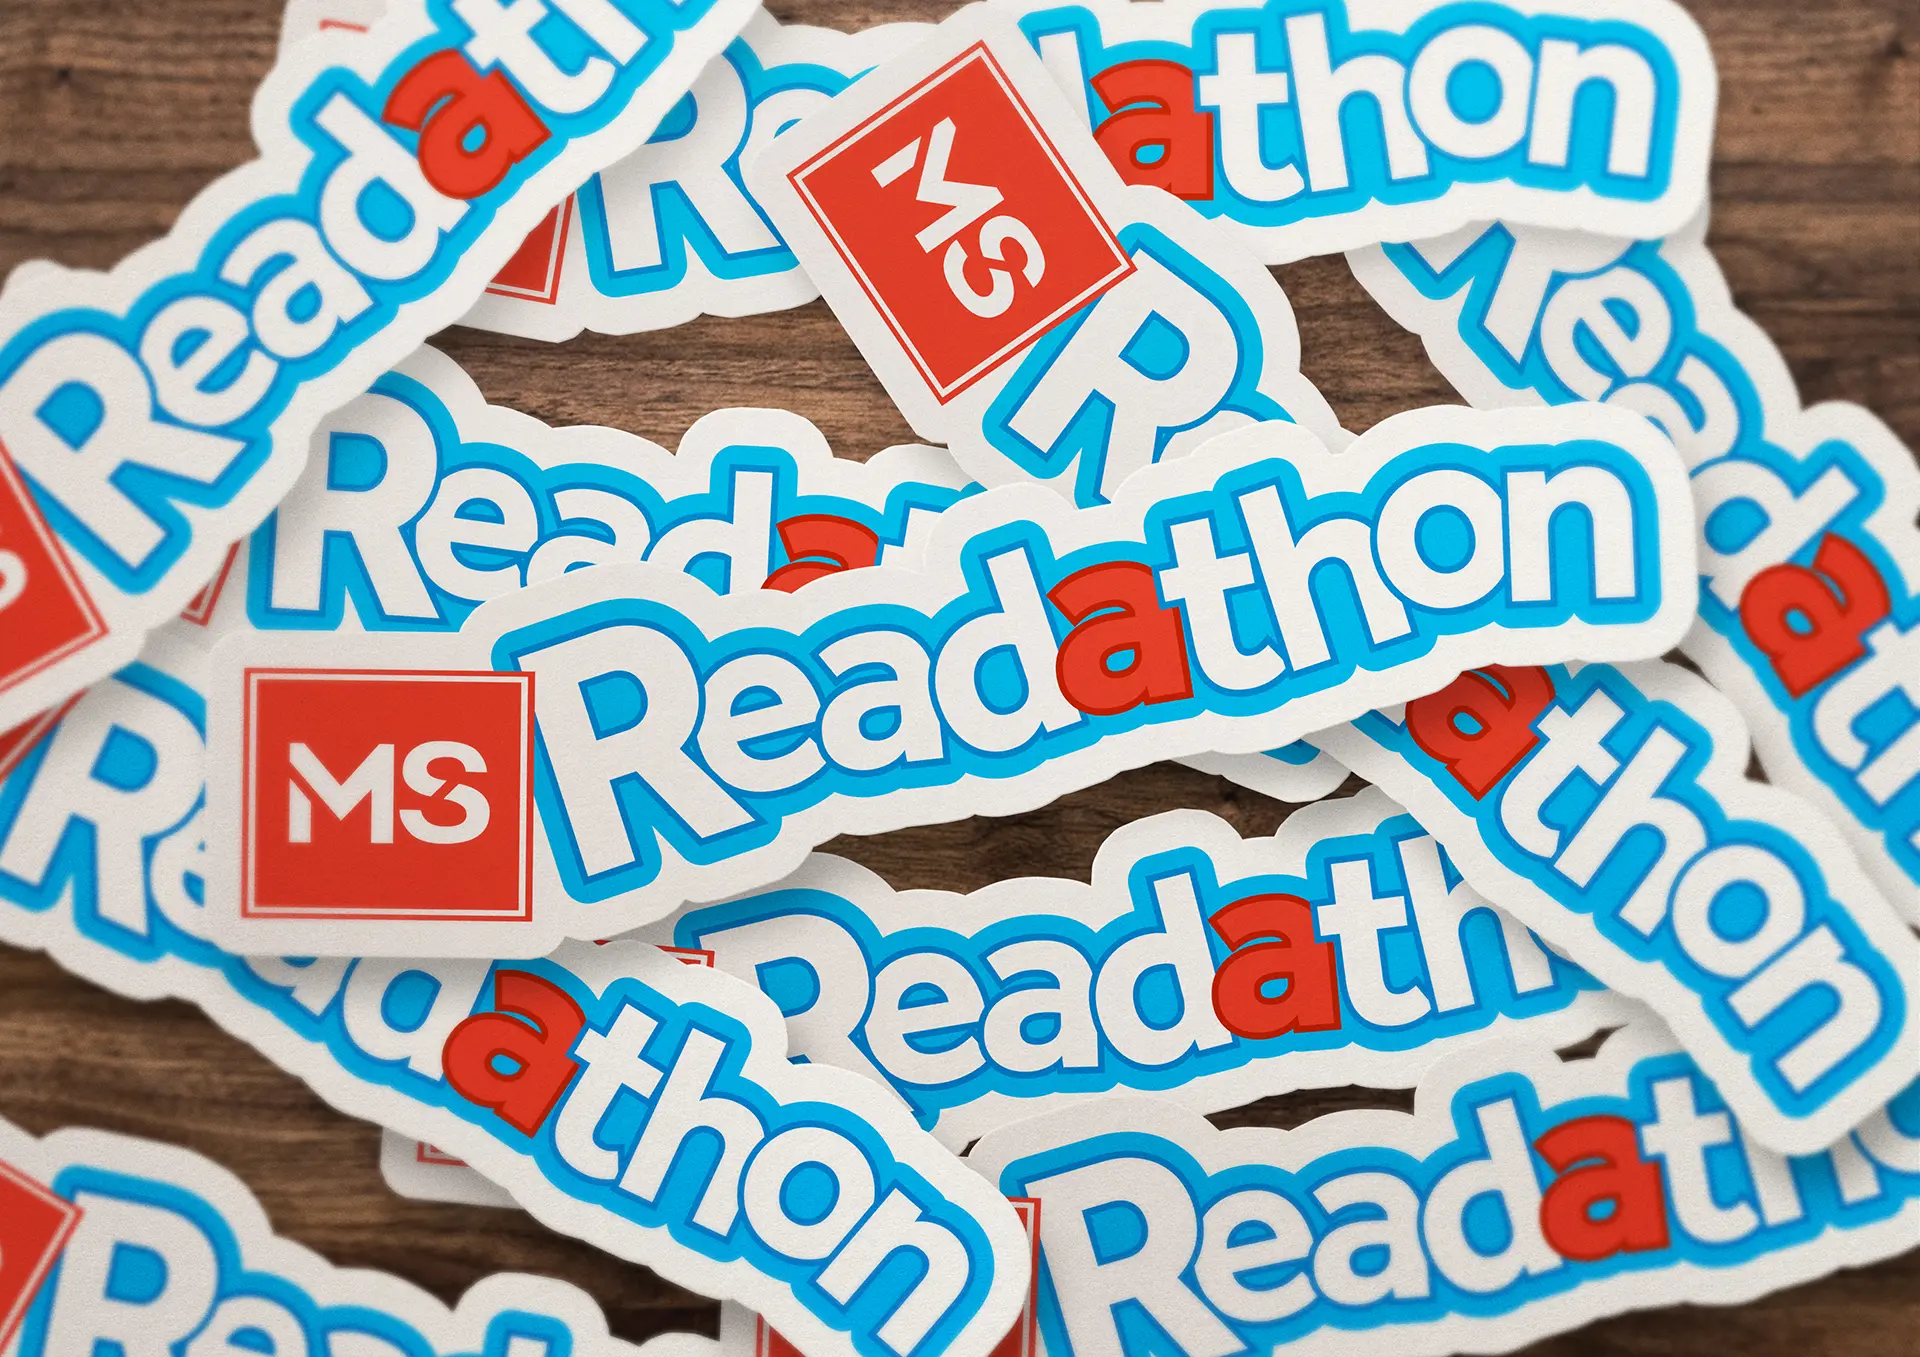 MS Readathon stickers